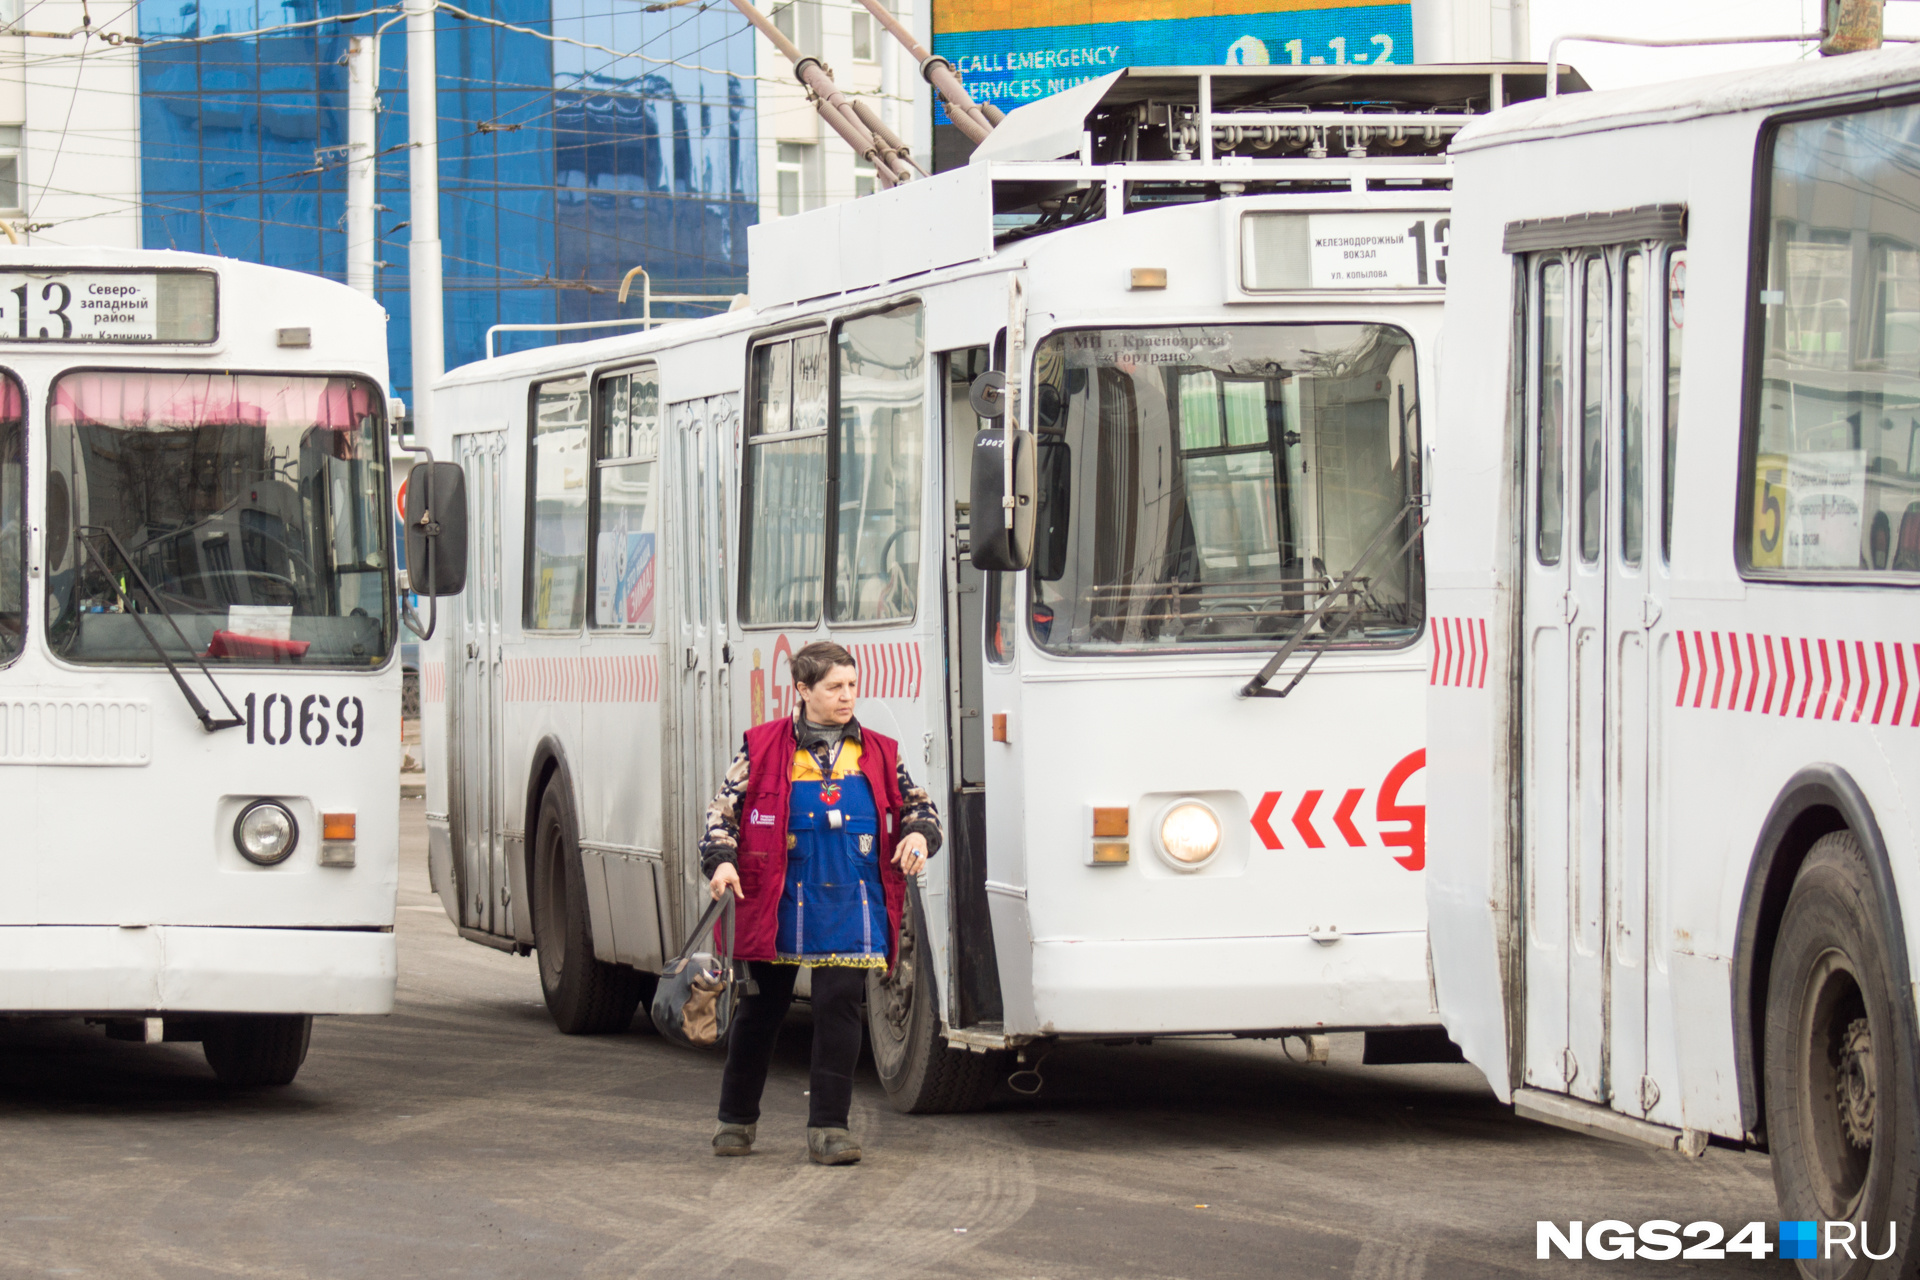 У кондукторов троллейбусов тоже произошли небольшие изменения в зарплате: час их работы стал стоить около 60 рублей